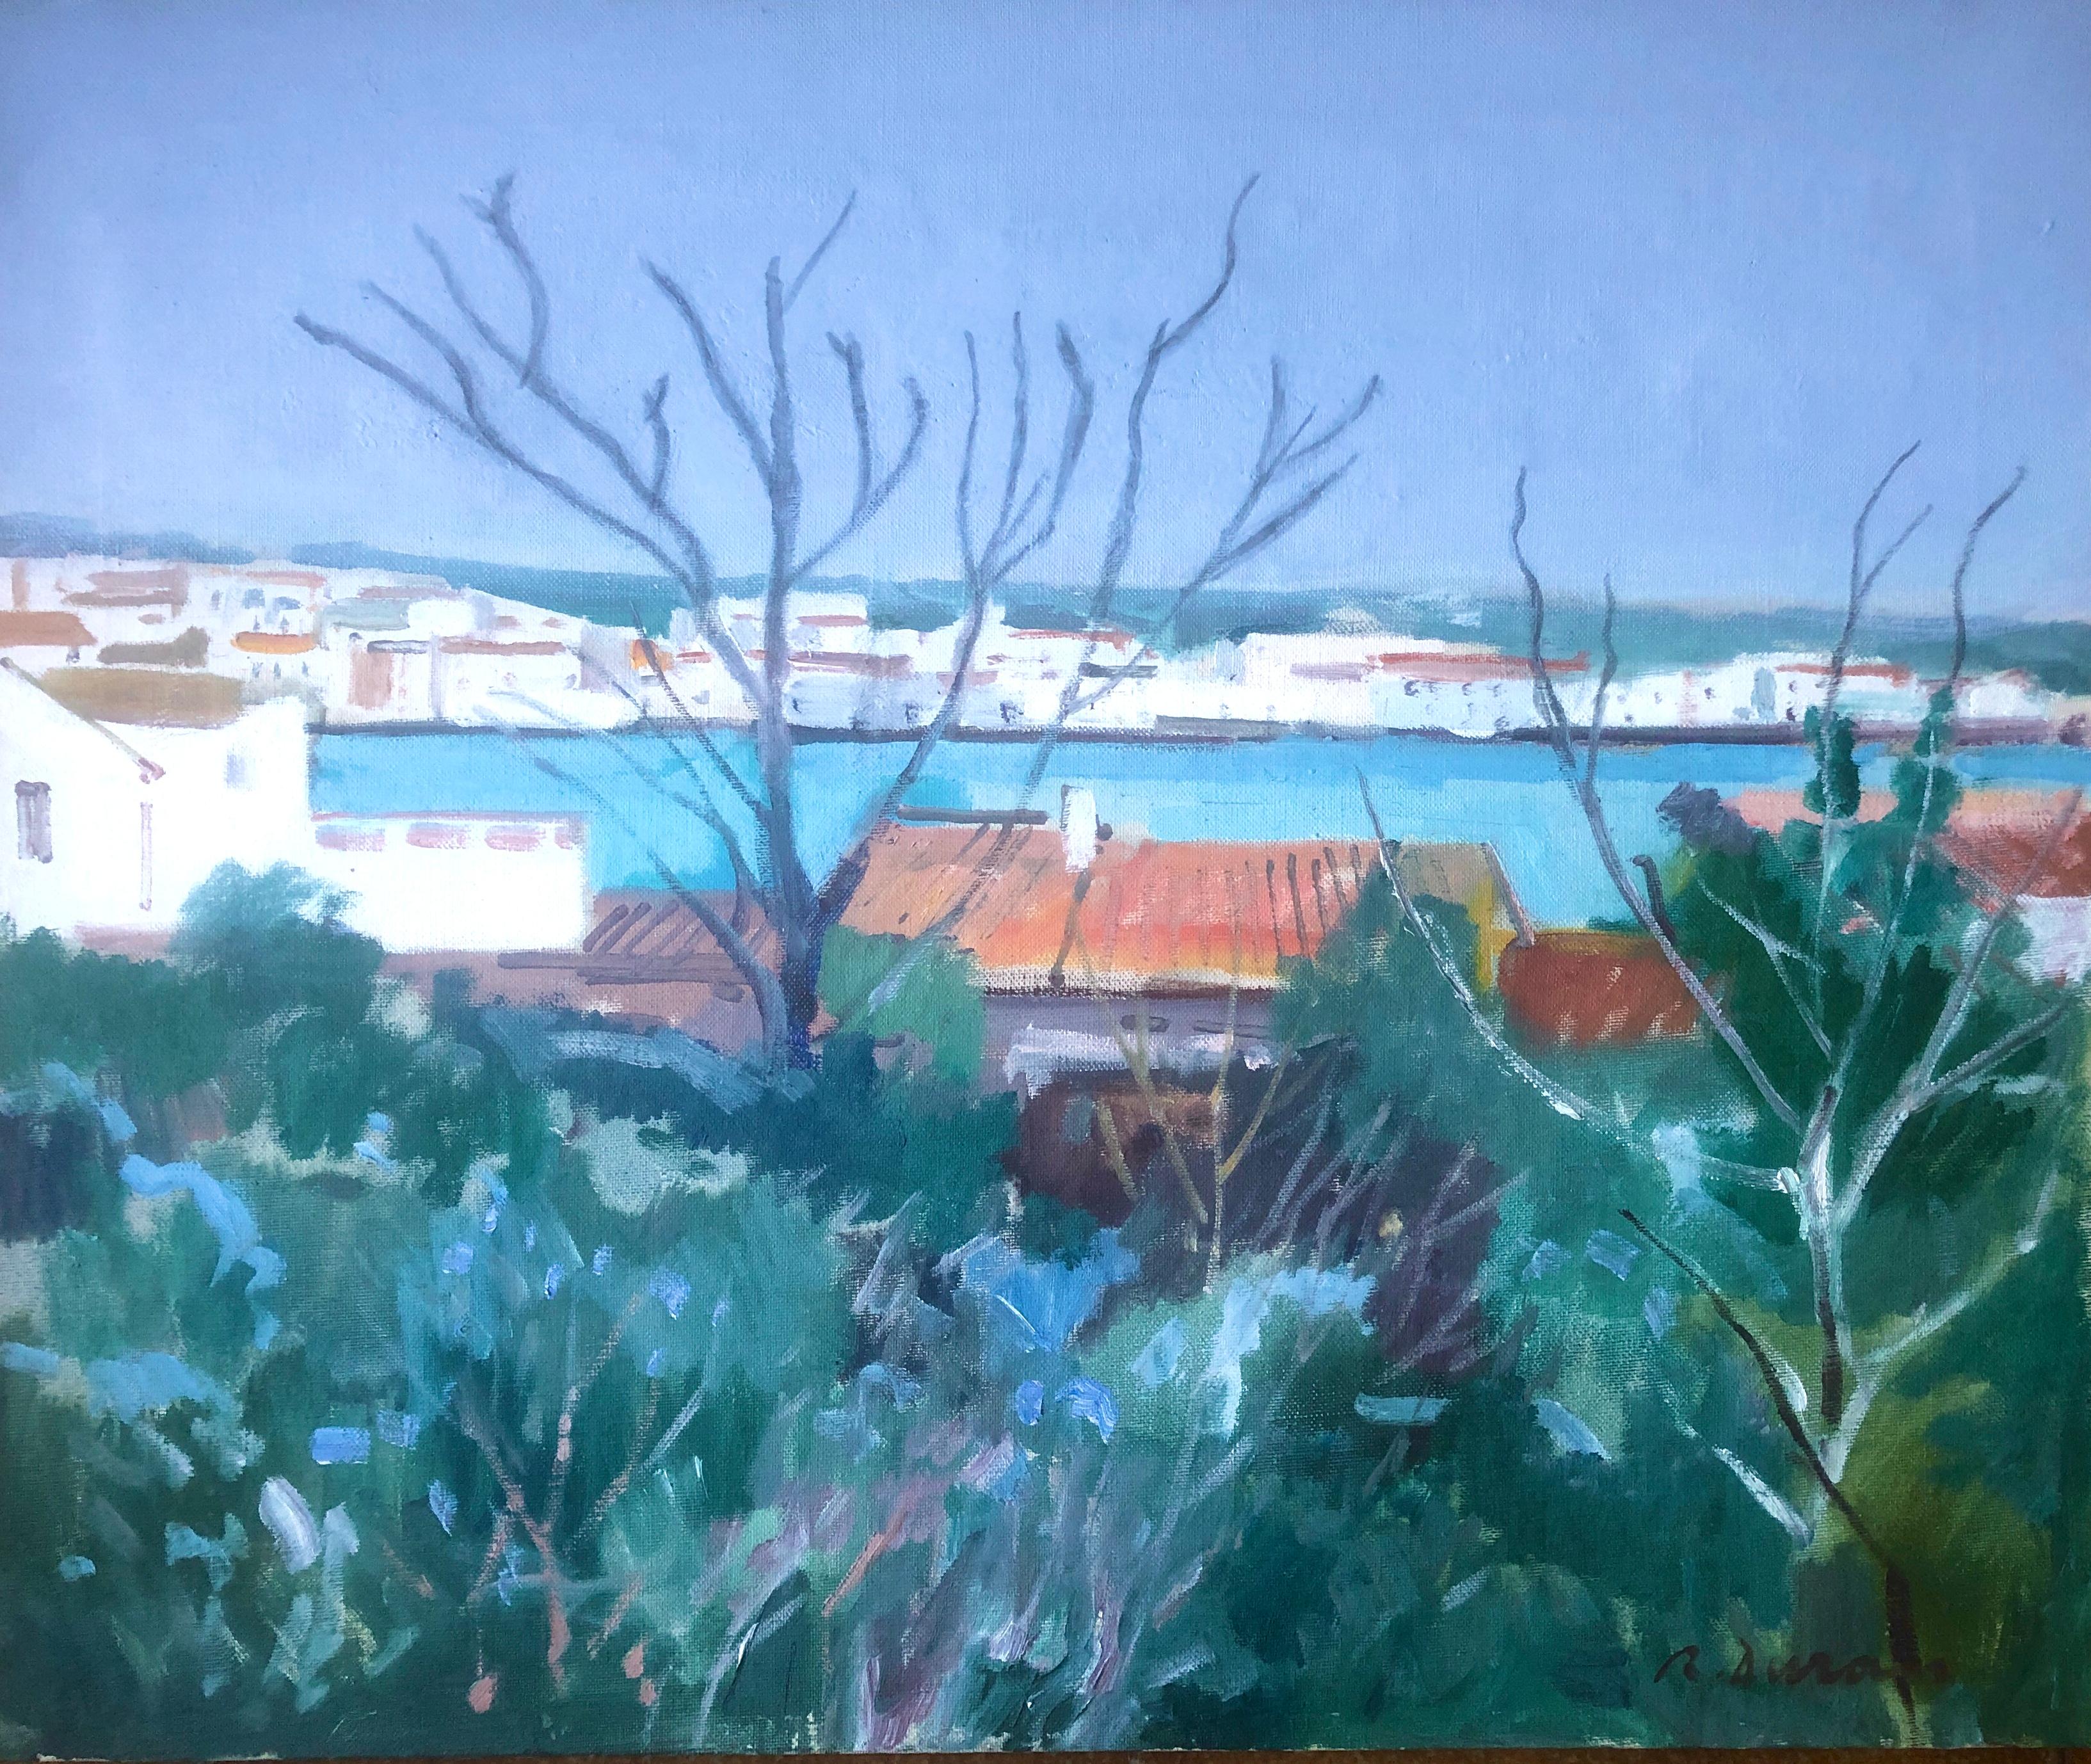 Landscape Painting Rafael Duran Benet - Cadaques huile sur toile peinture Espagne paysage marin espagnol